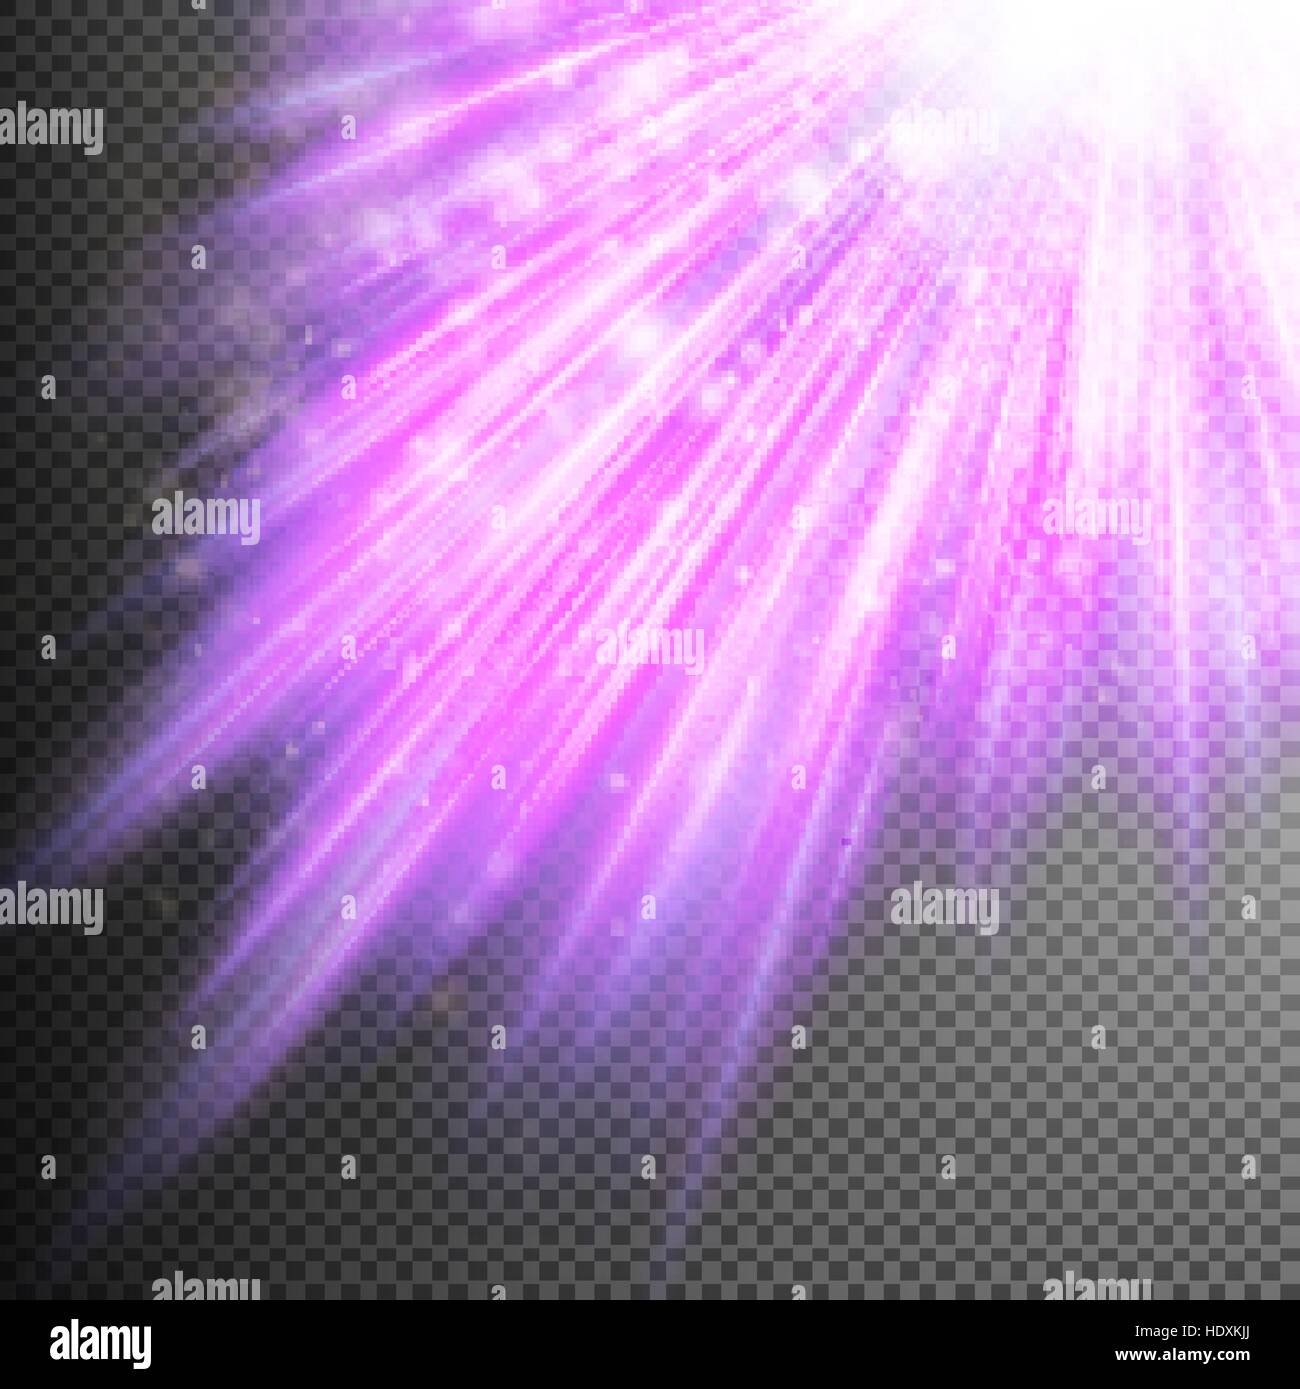 Schnee und Sterne fallen auf dem Hintergrund violett leuchtenden Strahlen. 10 EPS-Vektor-Datei enthalten Stock Vektor